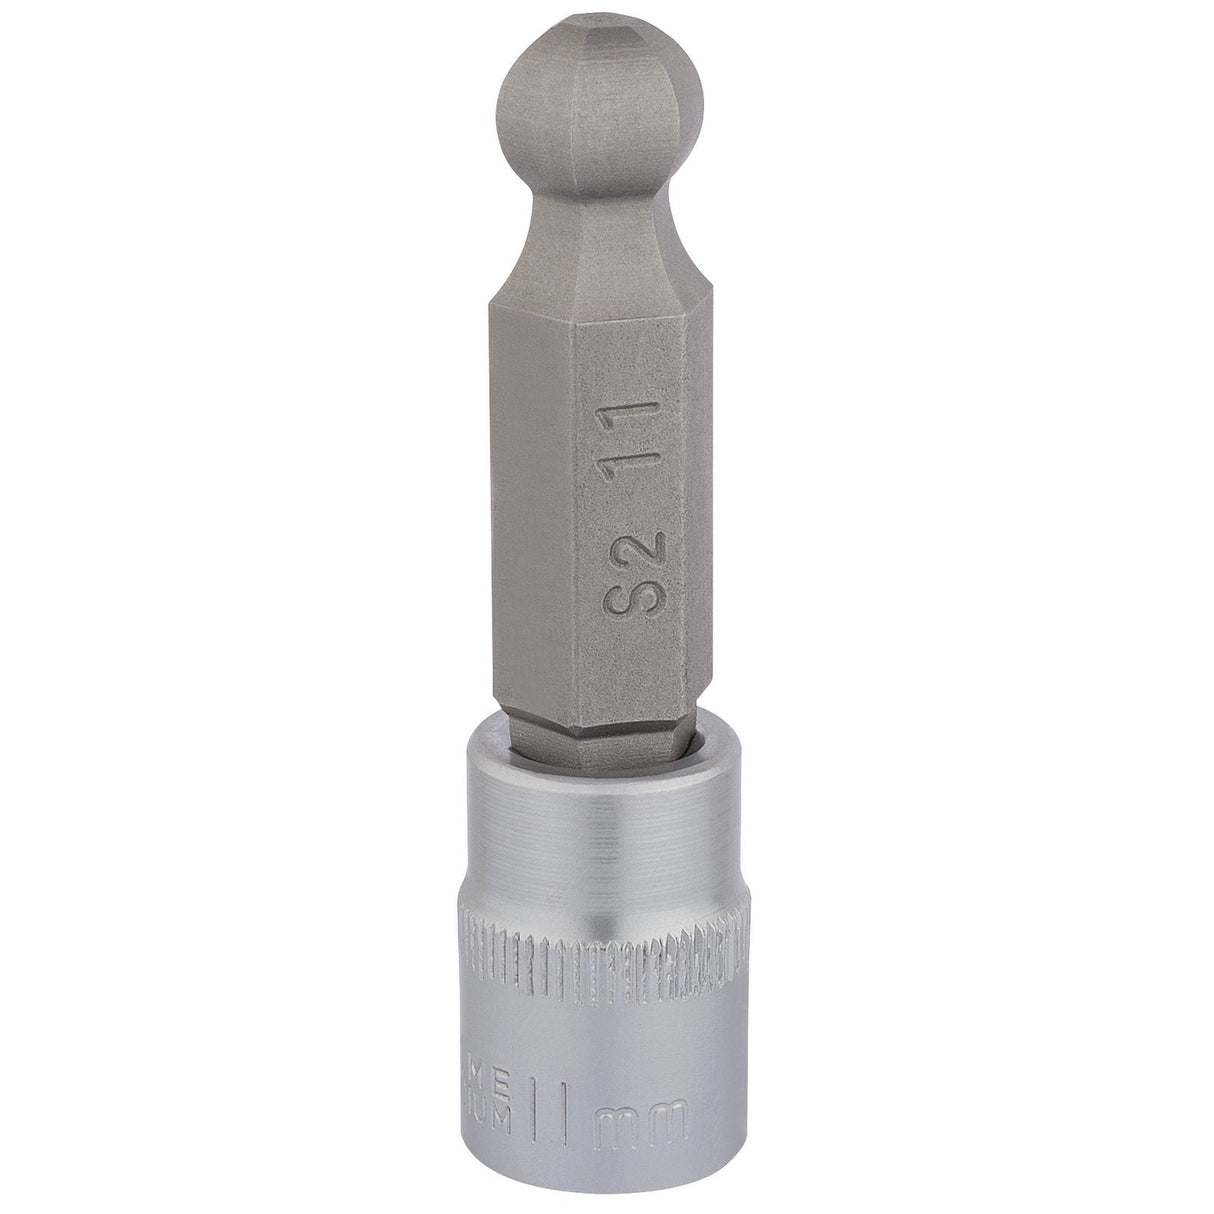 Draper Ball End Hexagonal Socket Bits, 3/8" Sq. Dr., 11mm - D-HEX-BALL/B - Farming Parts